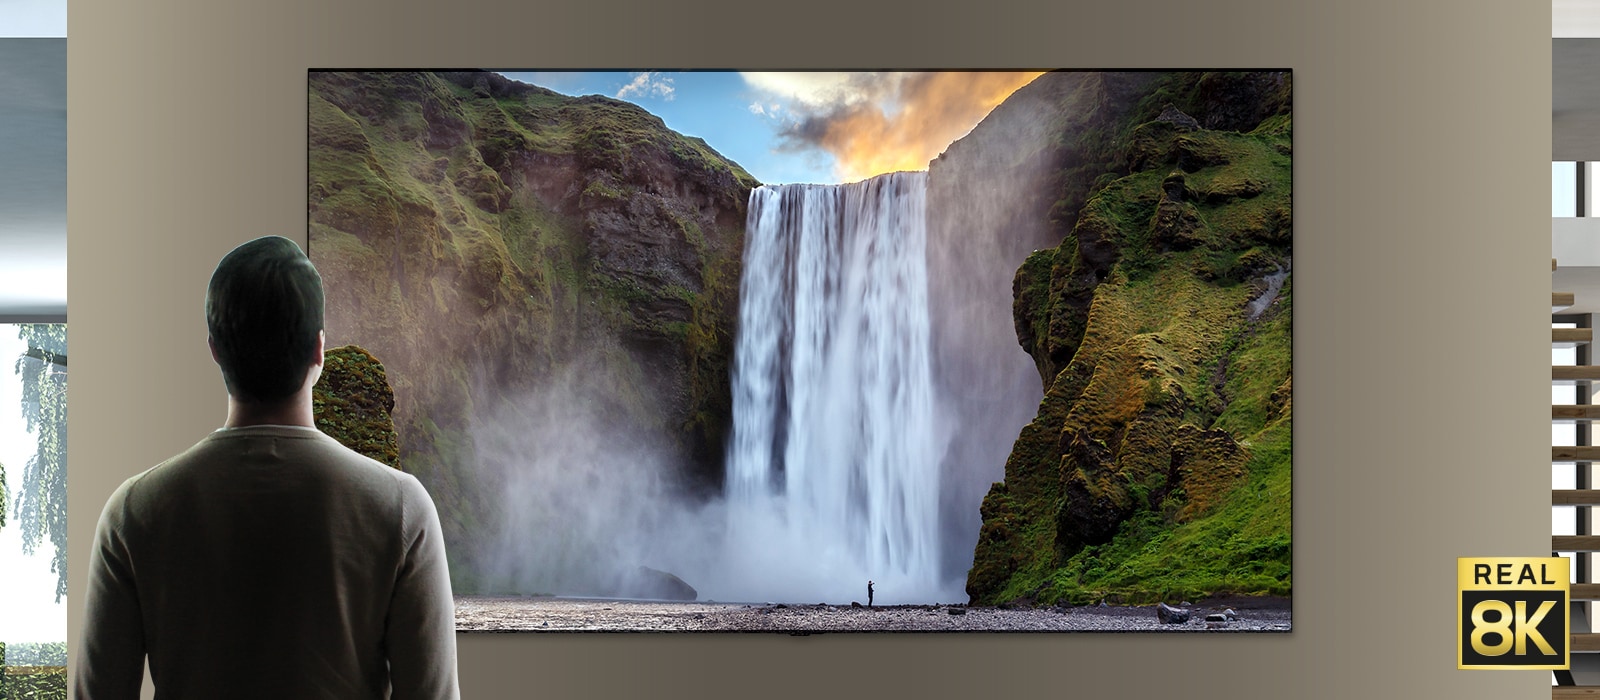 Un hombre está de pie frente a la imponente imagen de una gran cascada que se precipita por los acantilados. La escena se aleja para mostrar la imagen de la cascada en un televisor montado en la pared.